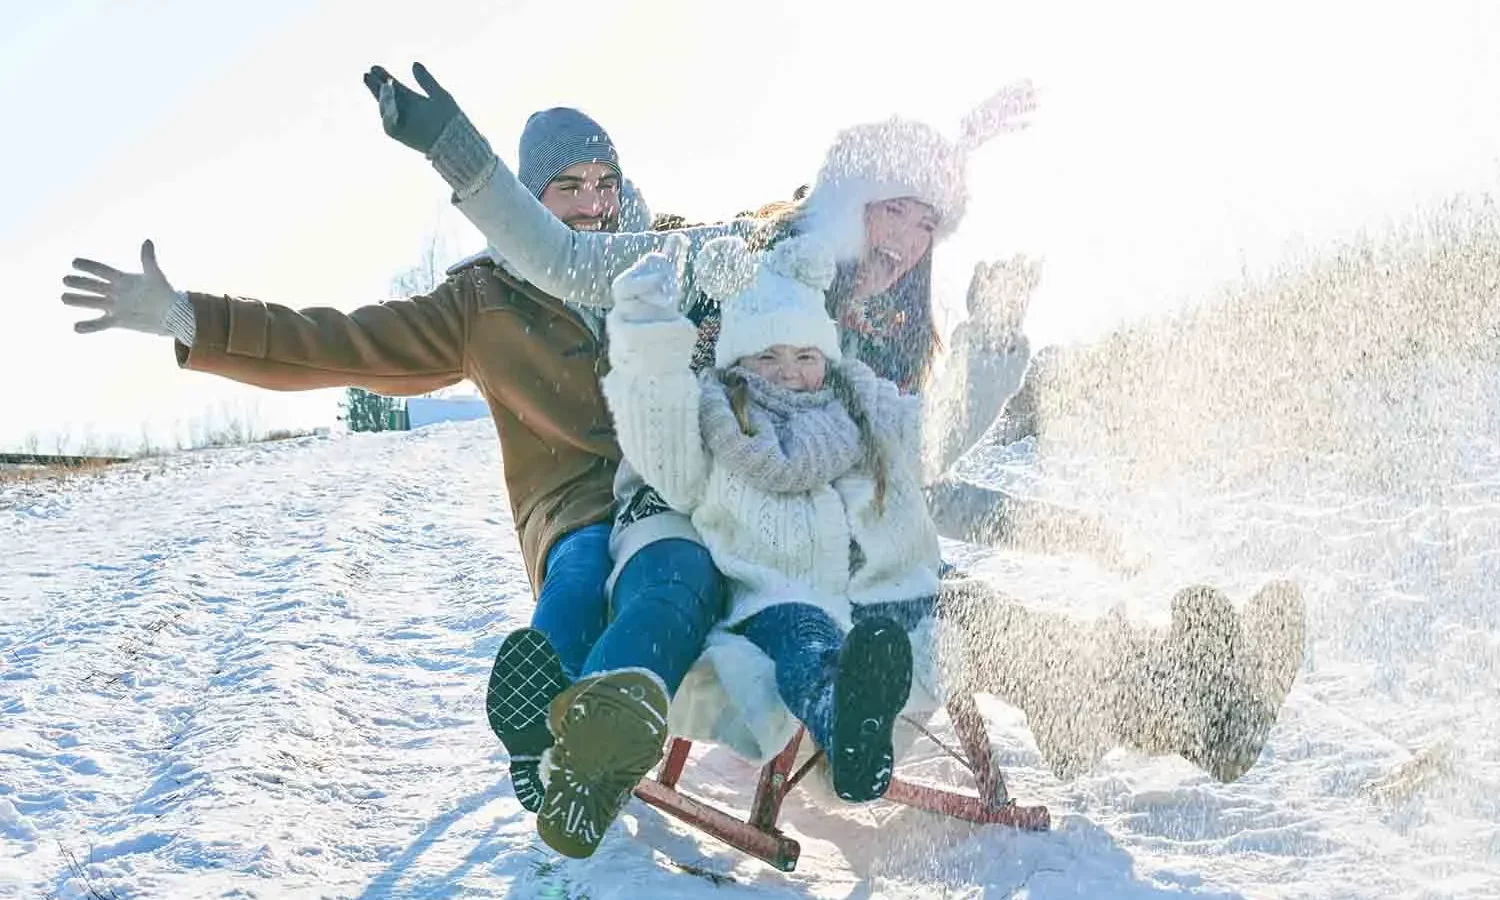 С началом нового года в Петербург пришла зима.  Питер Online рассказывает, в каких парках города можно вдоволь наиграться в снежки, накататься с горок на ватрушках, рассекать лед на коньках, накормить белок, полюбоваться снежной природой, а потом отдохнуть в приятном кафе: